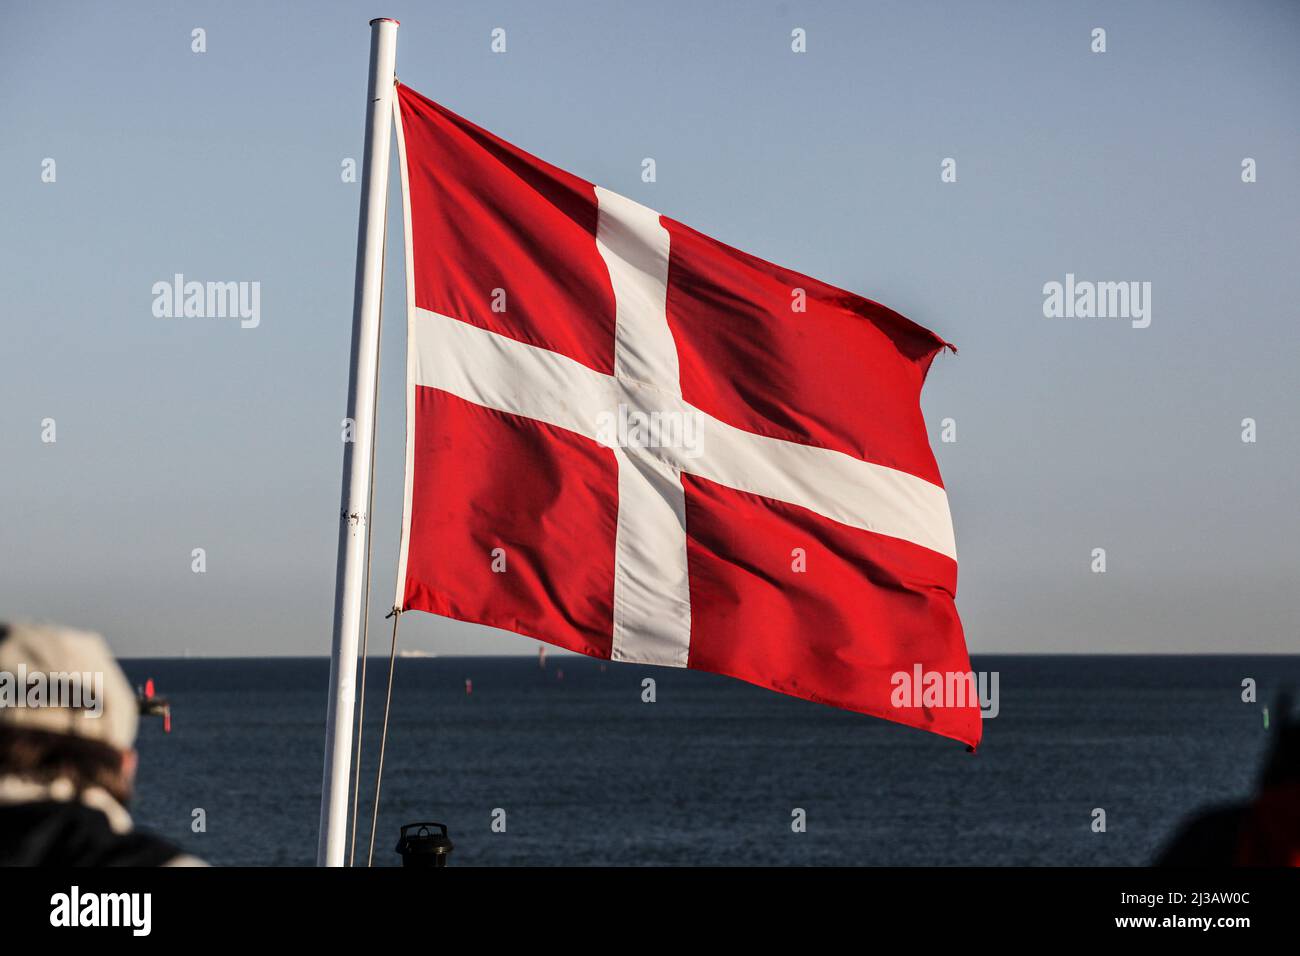 Die Flagge Dänemarks ist die offizielle dänische Nationalflagge. Sie wird Dannebrog oder Danebrog genannt, estaba en Dänischer Sprache Flagge der Dänen b Foto de stock